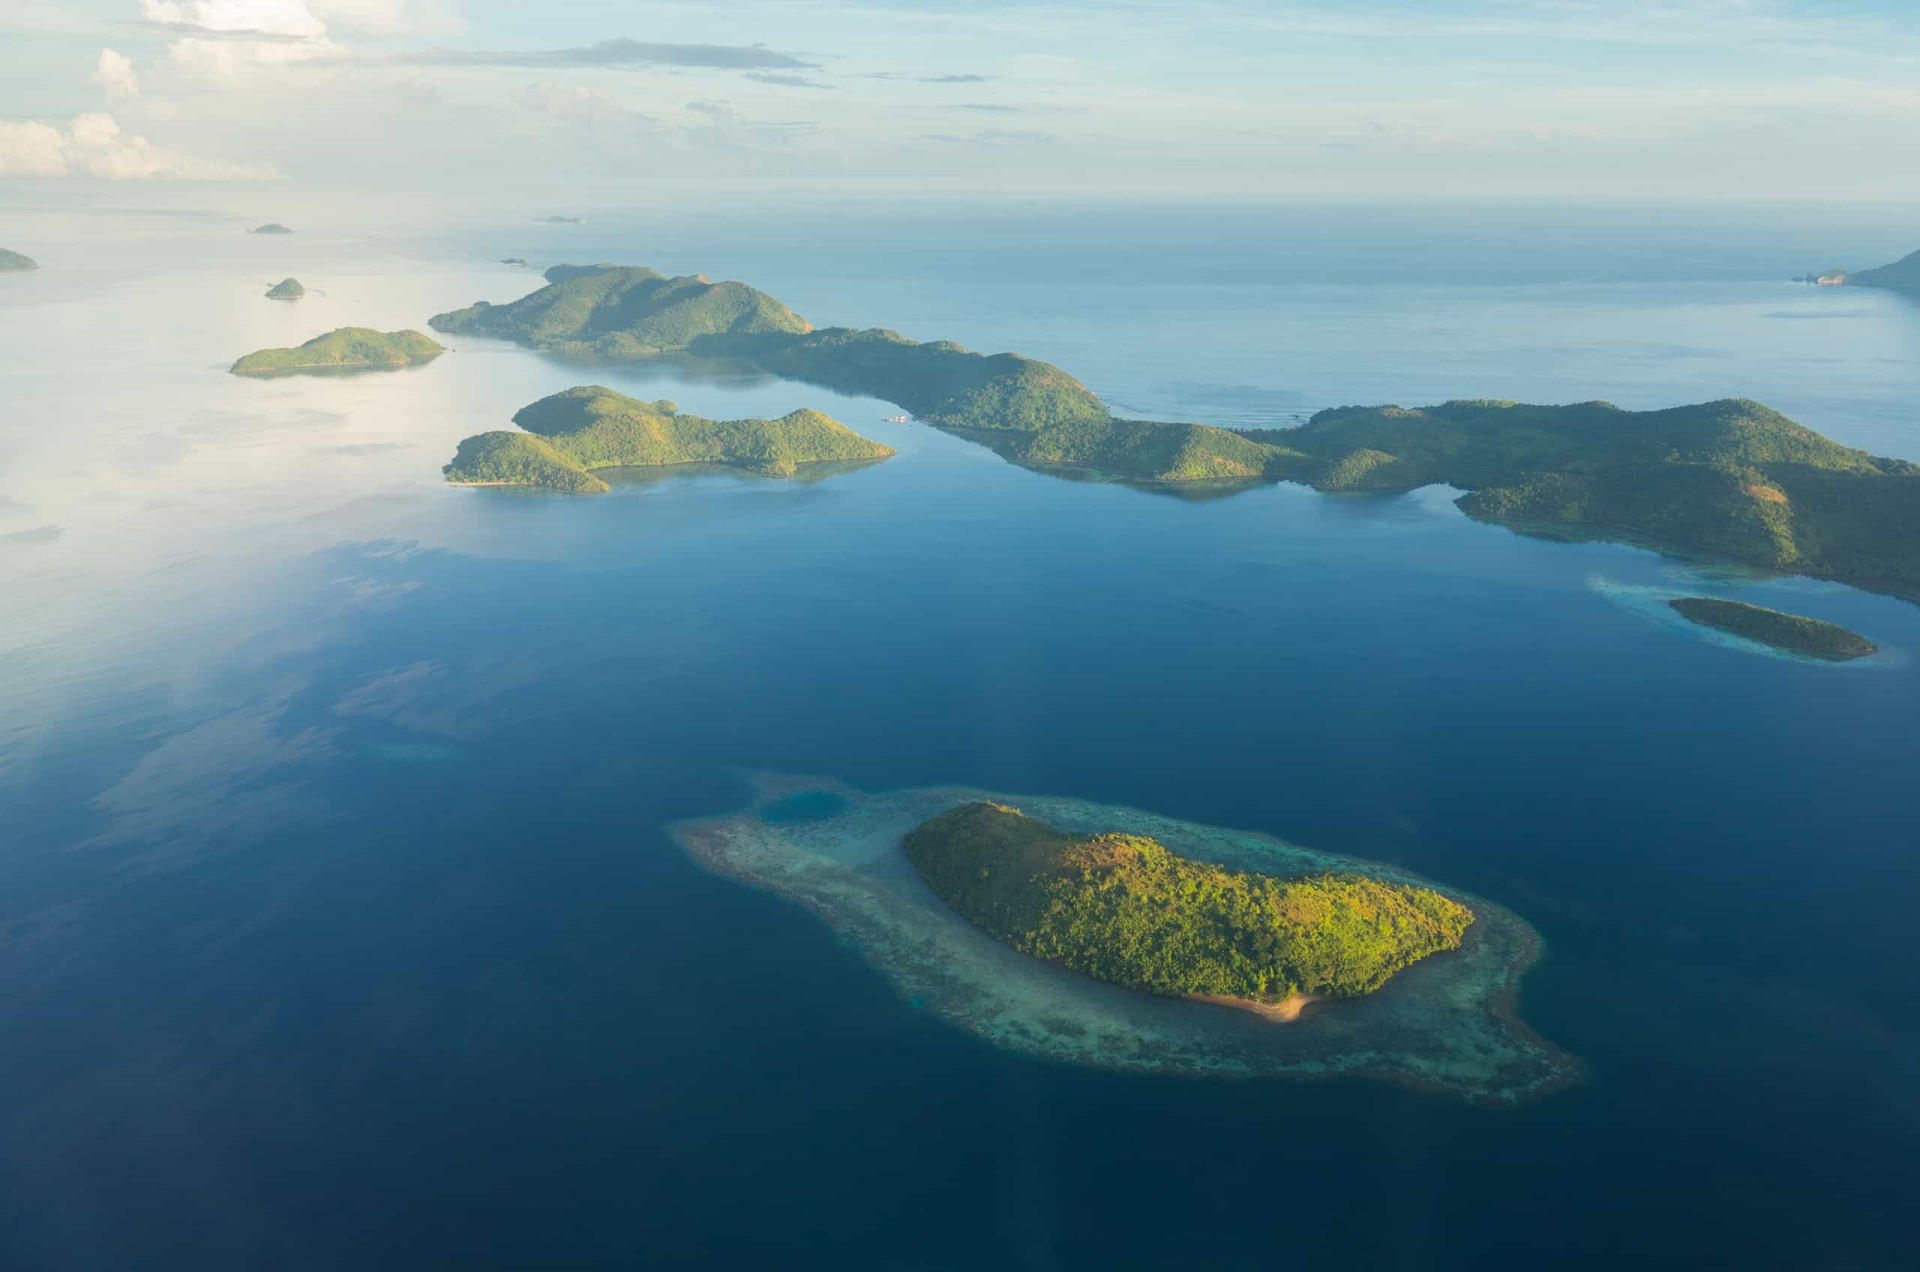 P island. Филиппины архипелаг. Архипелаг Филиппинские острова. Остров Сиаргао Филиппины вид сверху. Малаккский архипелаг.